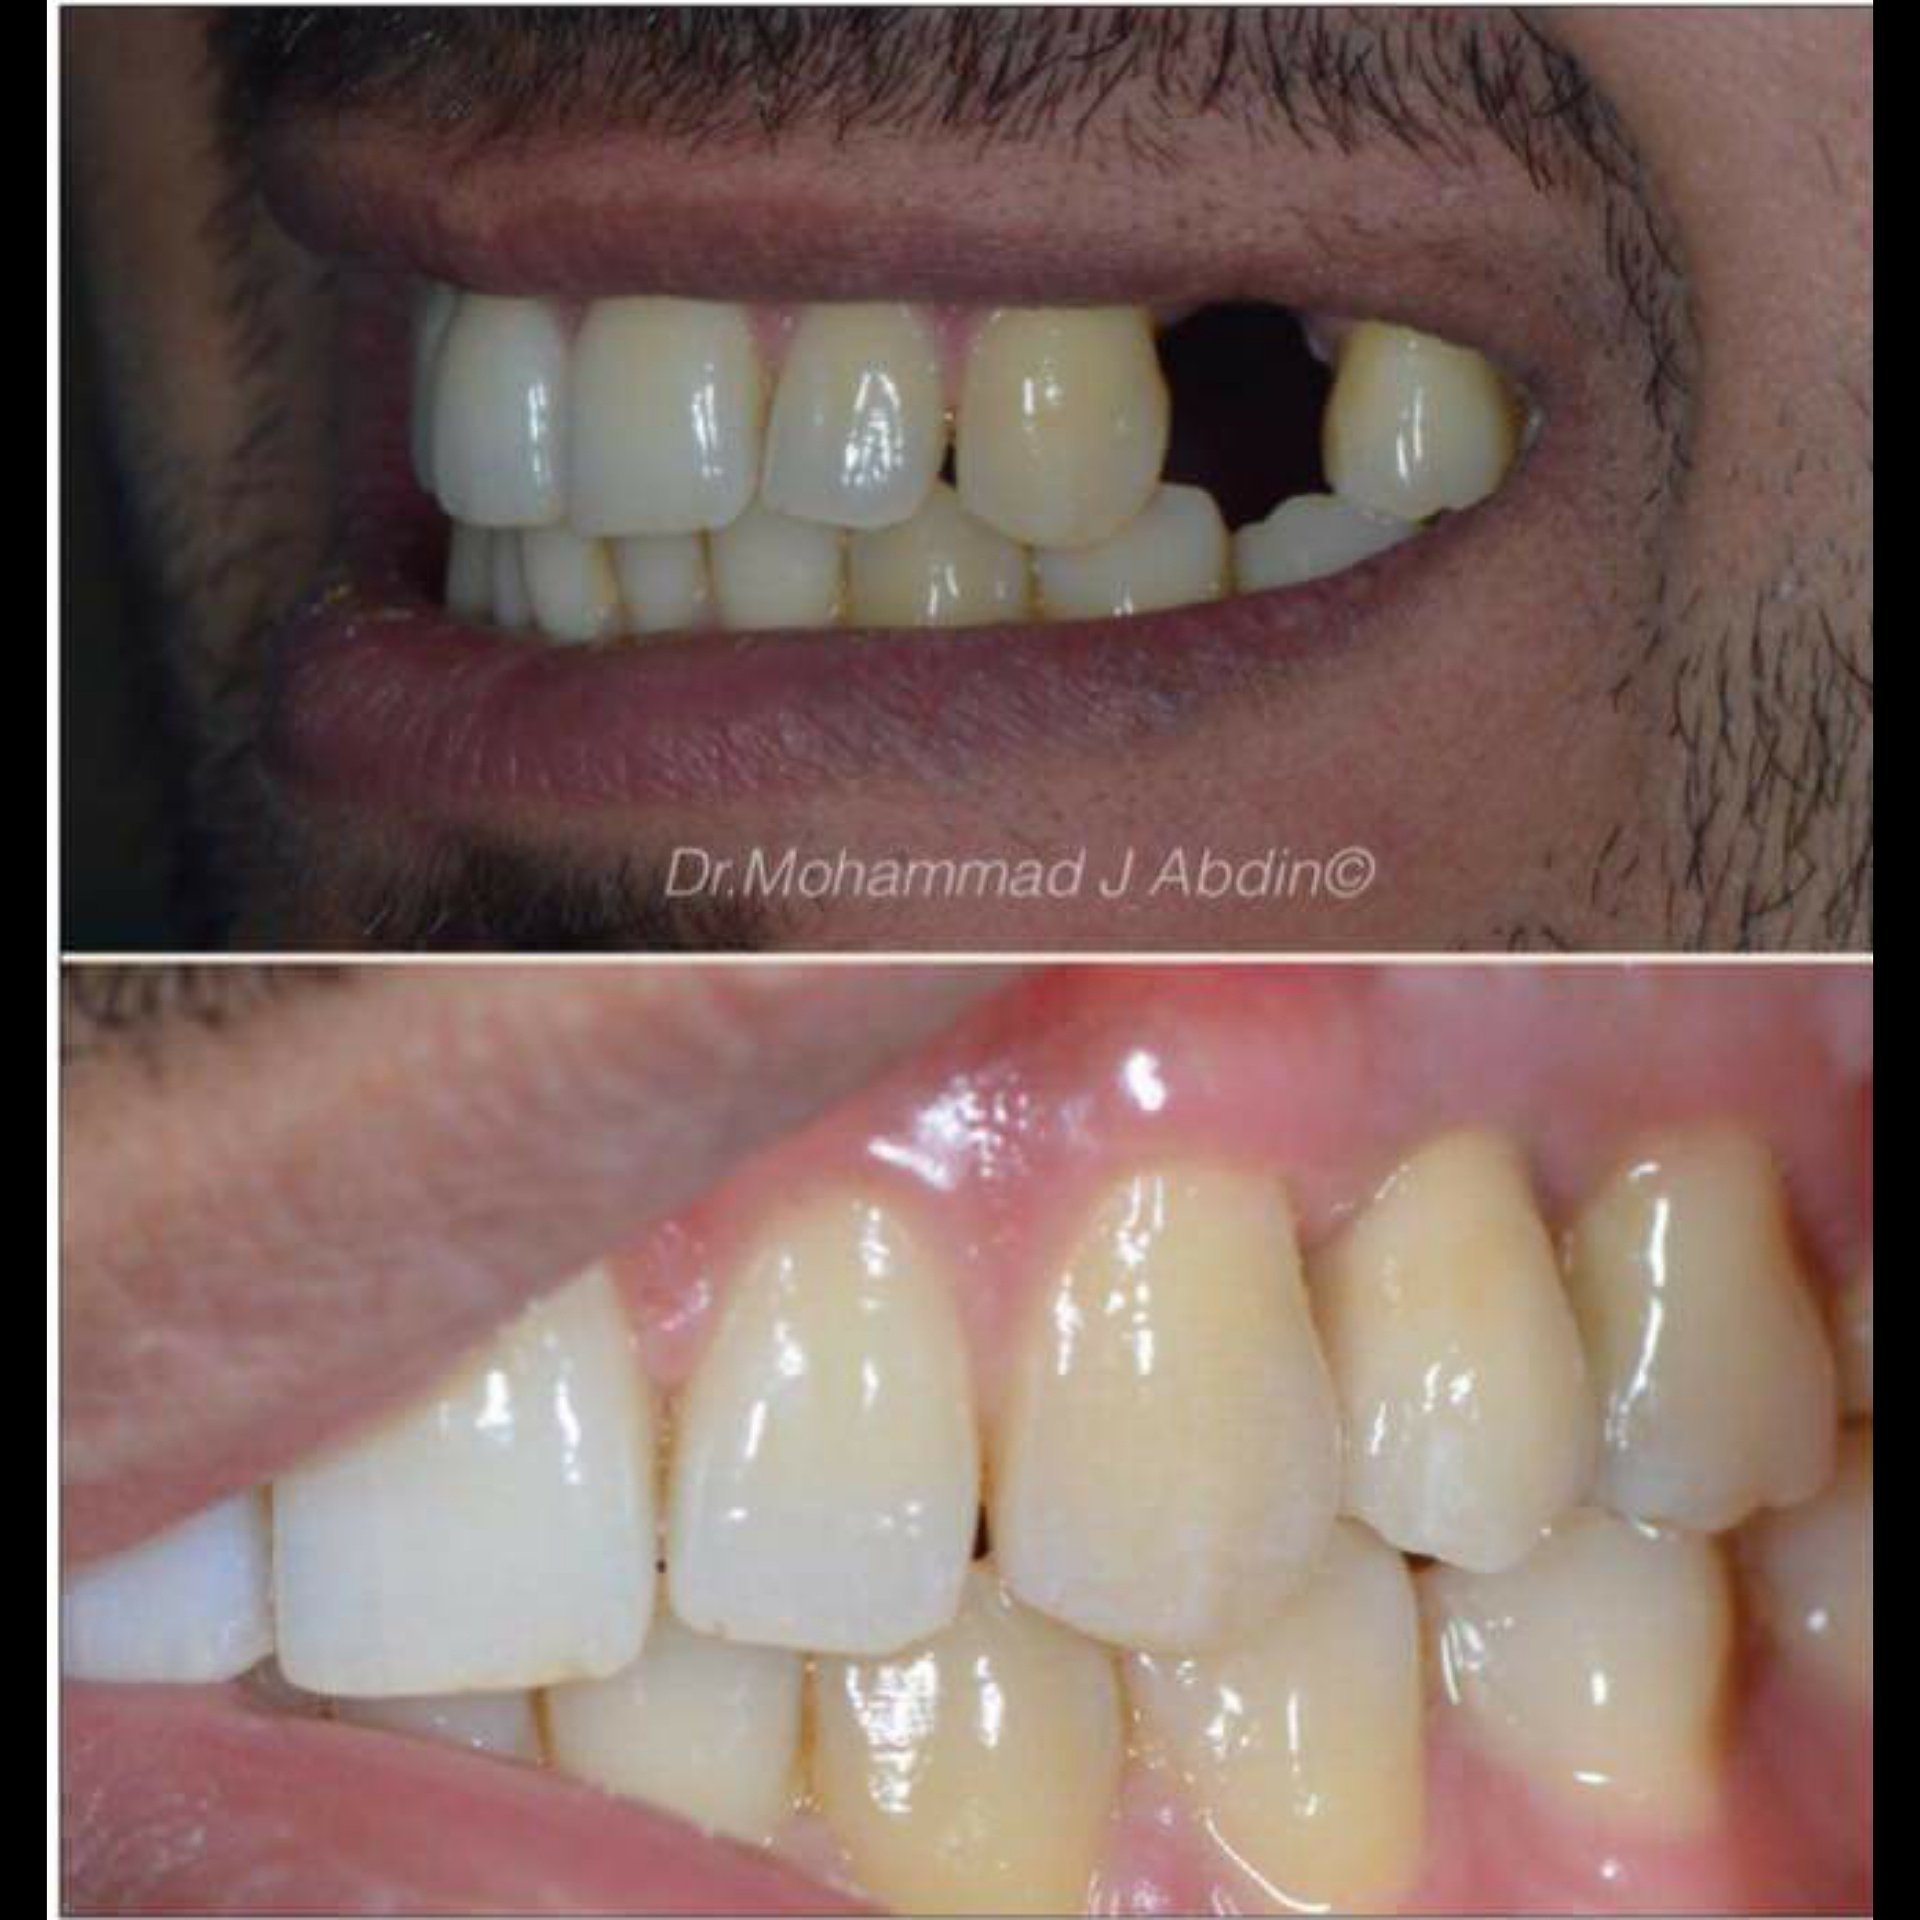 د.محمد عابدين أخصائي تركيبات الأسنان الثابته و المتحركة ، تجميل وزراعة الأسنان P_7384ih8c2